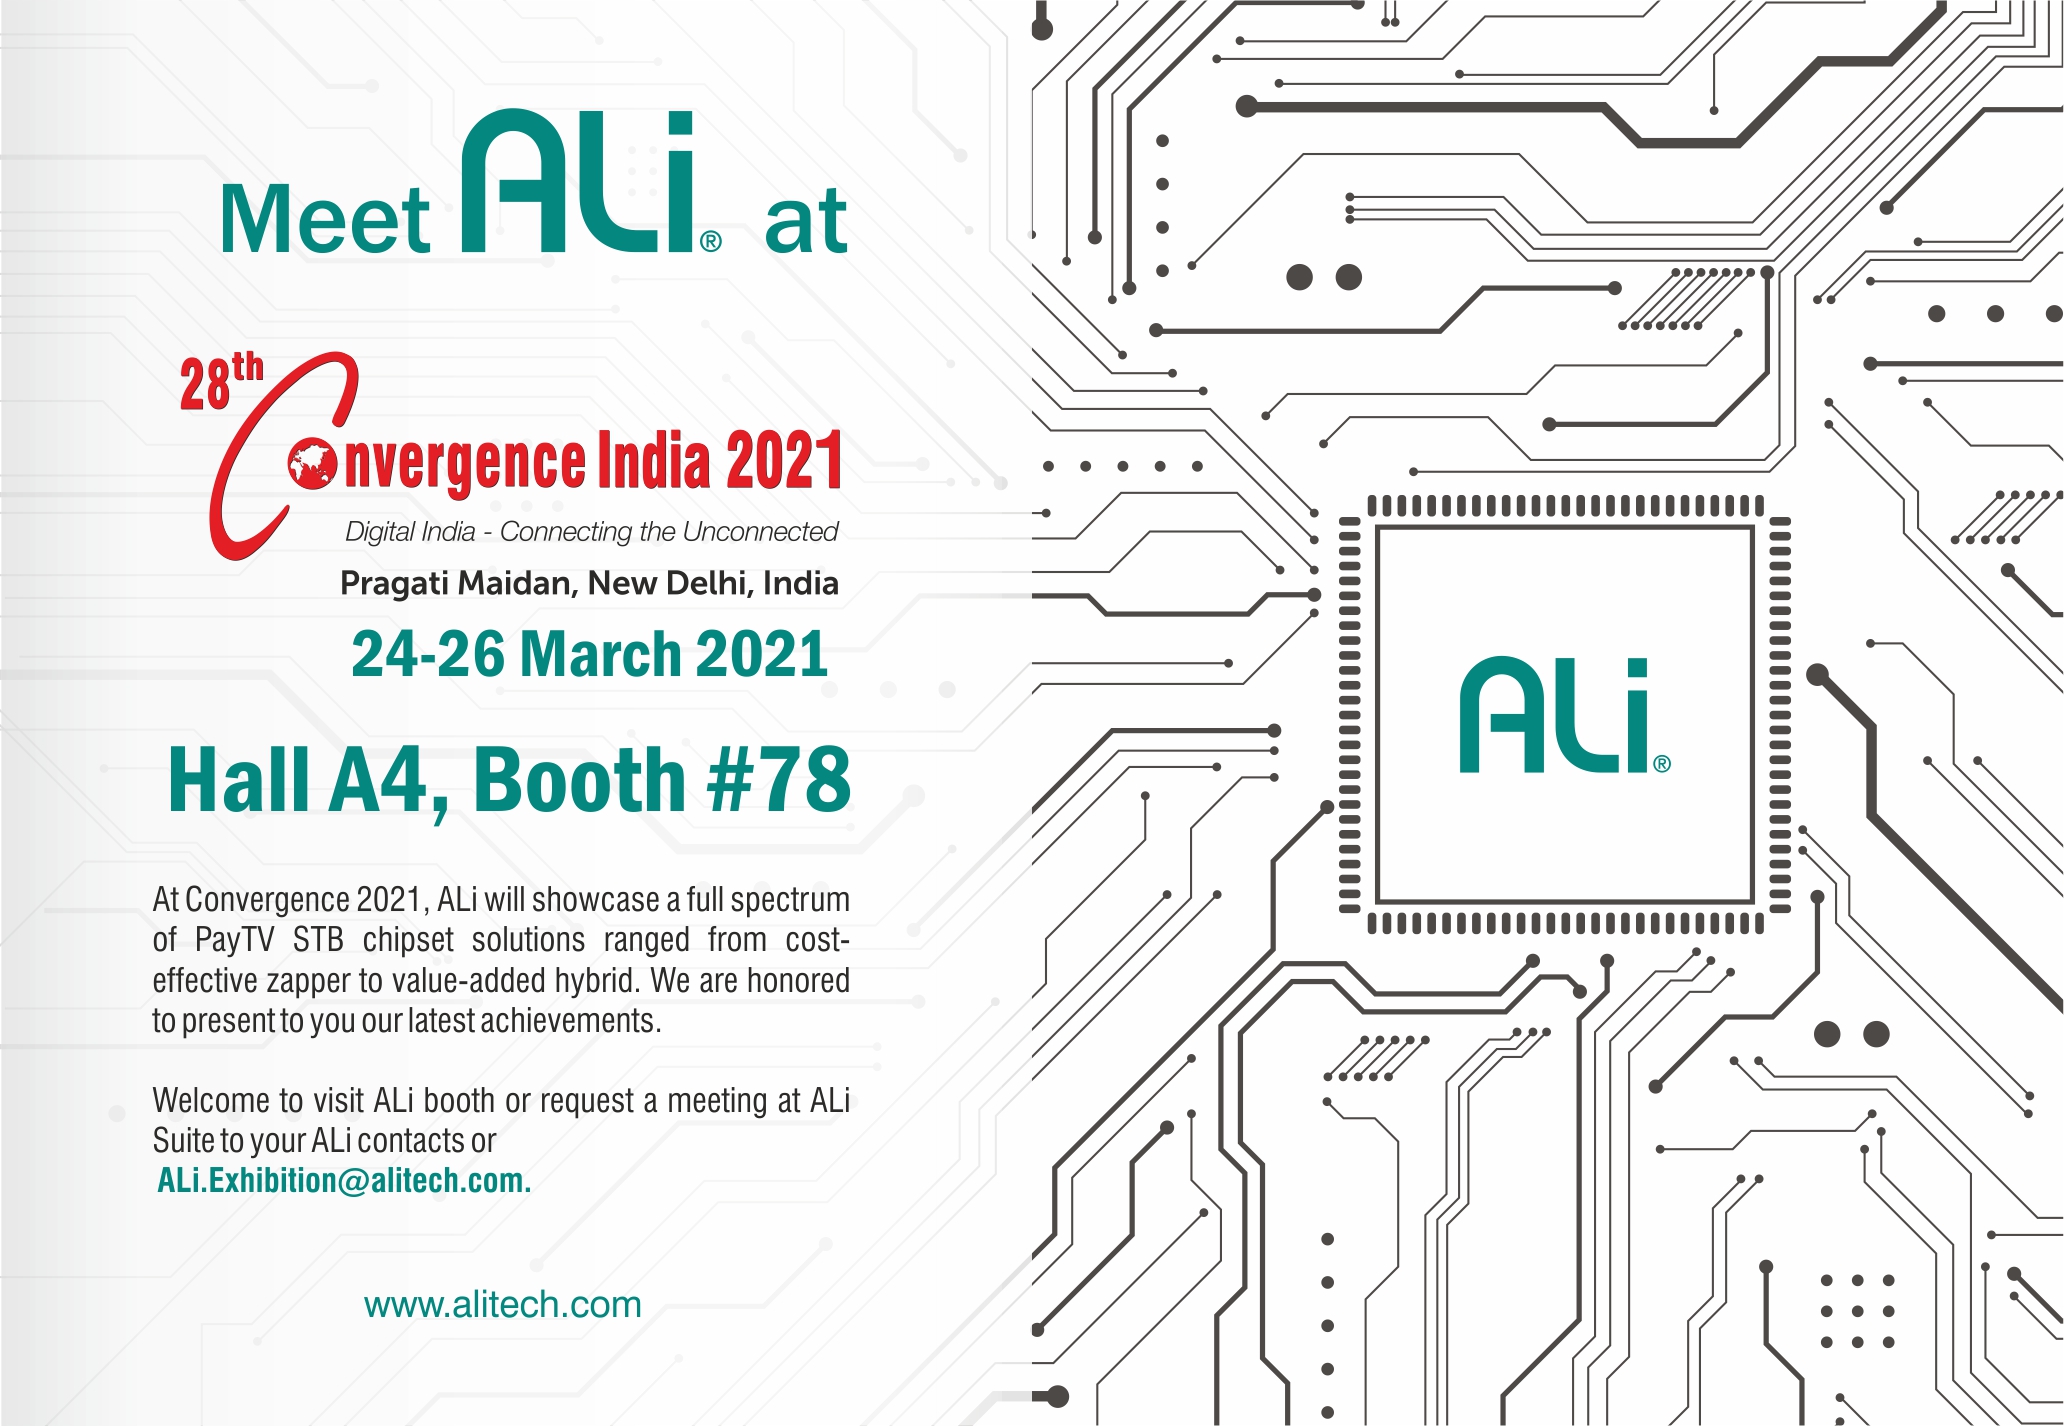 Ali tech Convergence Invite 2021 invitation